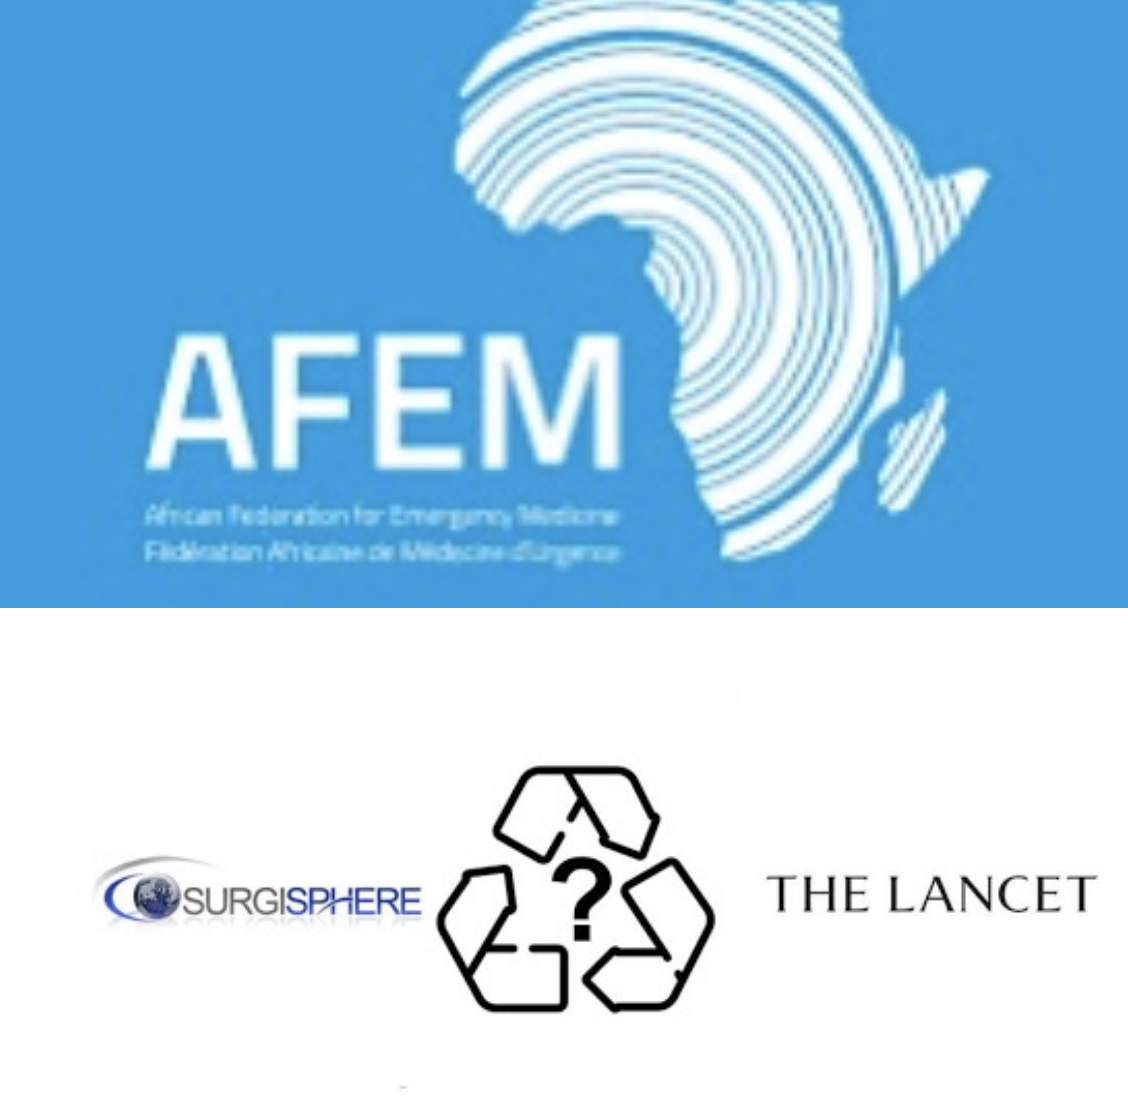 Seule entité africaine ayant collaboré avec Surgisphere : L’AFEM préoccupée par la possibilité d'avoir été roulée dans la farine.